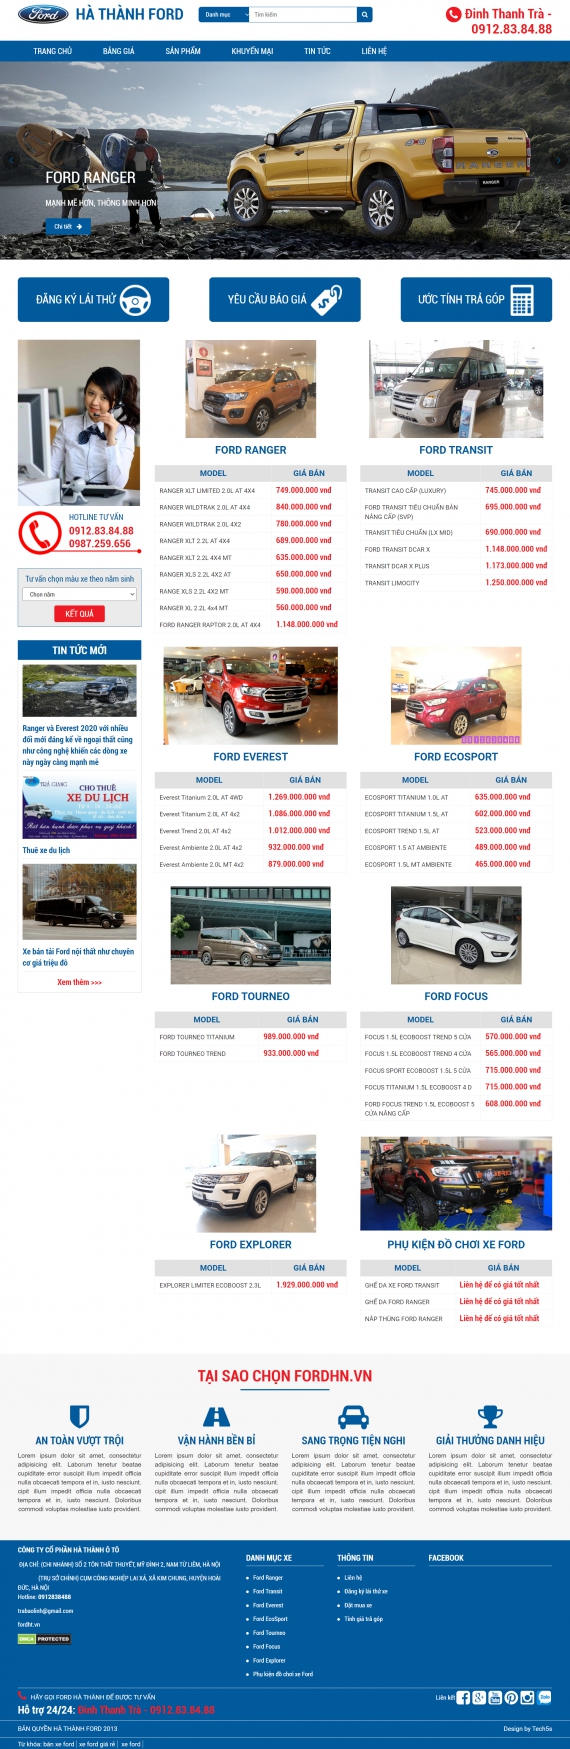 Mẫu website bán hàng - 364